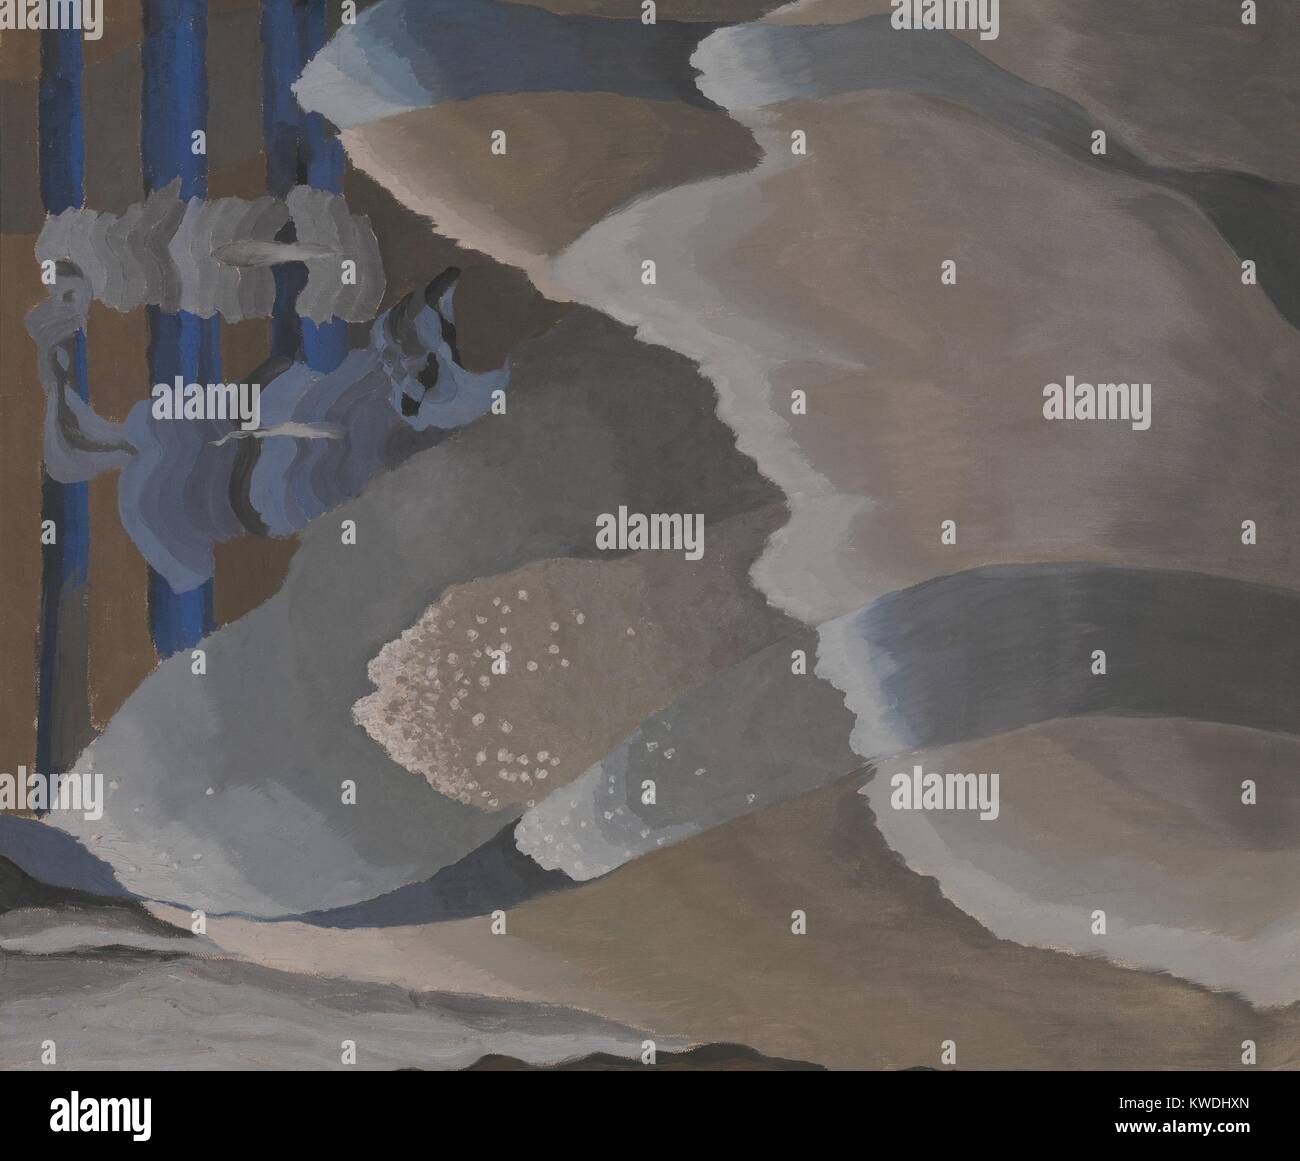 Die Wellen, die von Arthur Dove, 1929, Amerikanische Malerei, Öl und Aluminium Farbe auf Leinwand. Wellen, vorgestellt von oben, Flut ans Ufer über vertikale Balken, die die Kanten des Meeresbodens zu evozieren (BSLOC_2017_7_82) Stockfoto